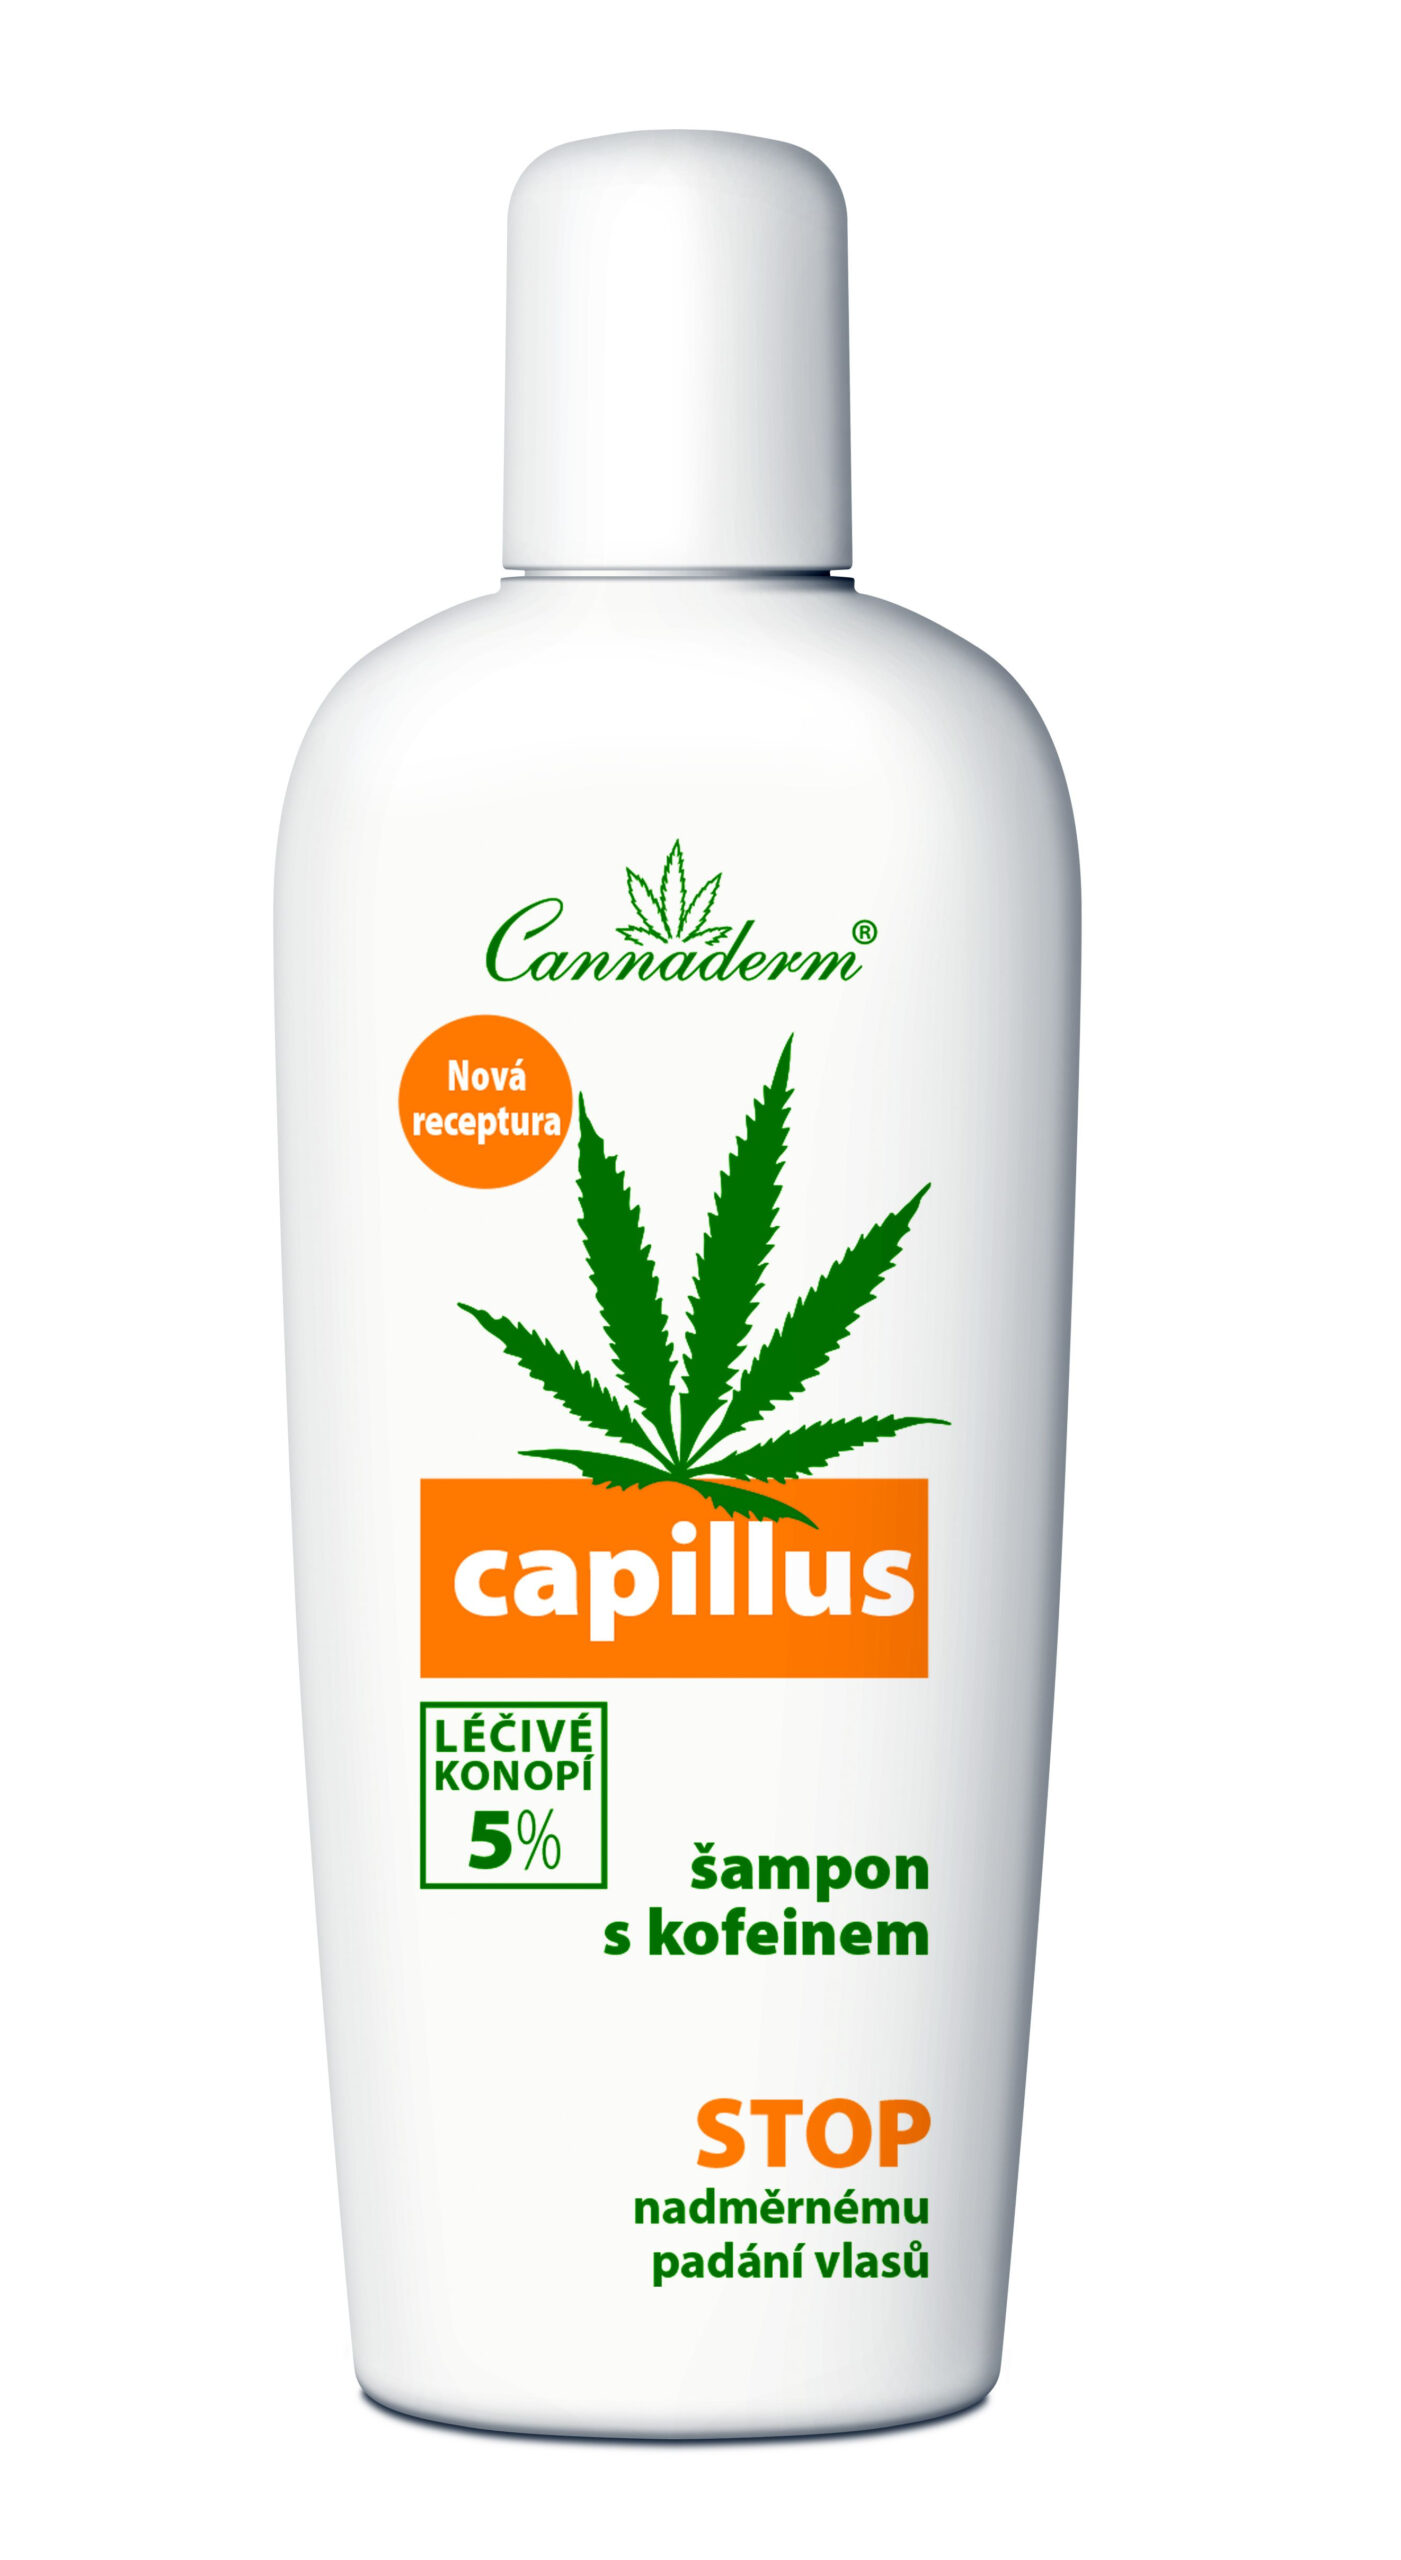 Cannaderm Capillus Šampon s kofeinem 150 ml Cannaderm